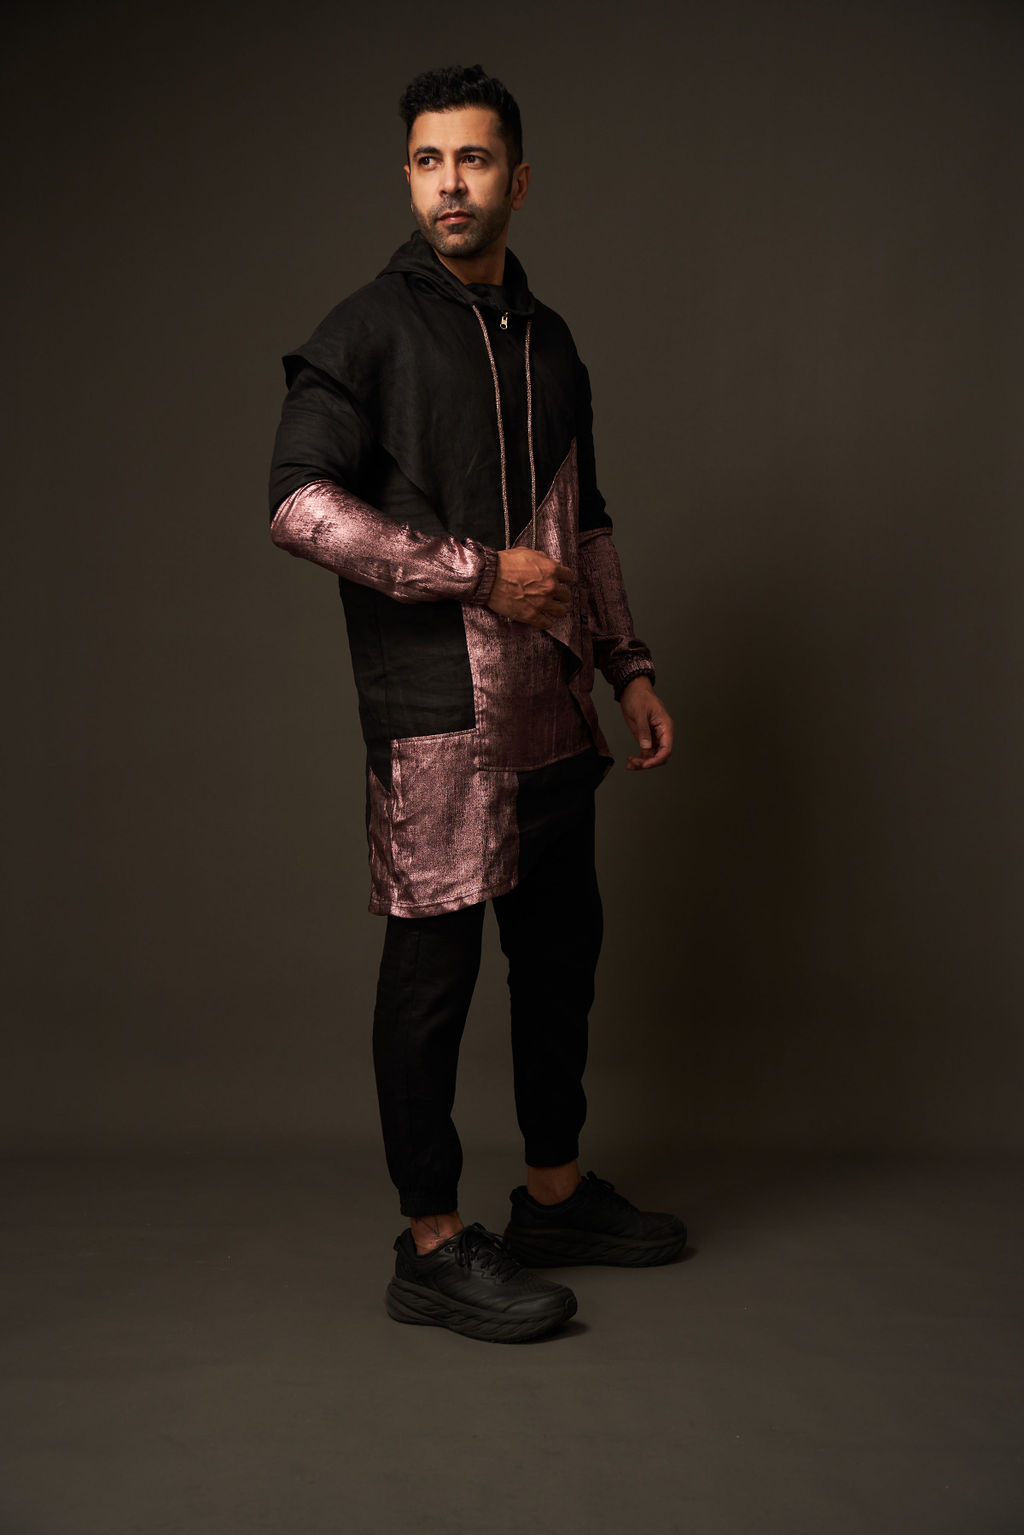 Hoodie Shervani Set in Black & Pink Metallic Color